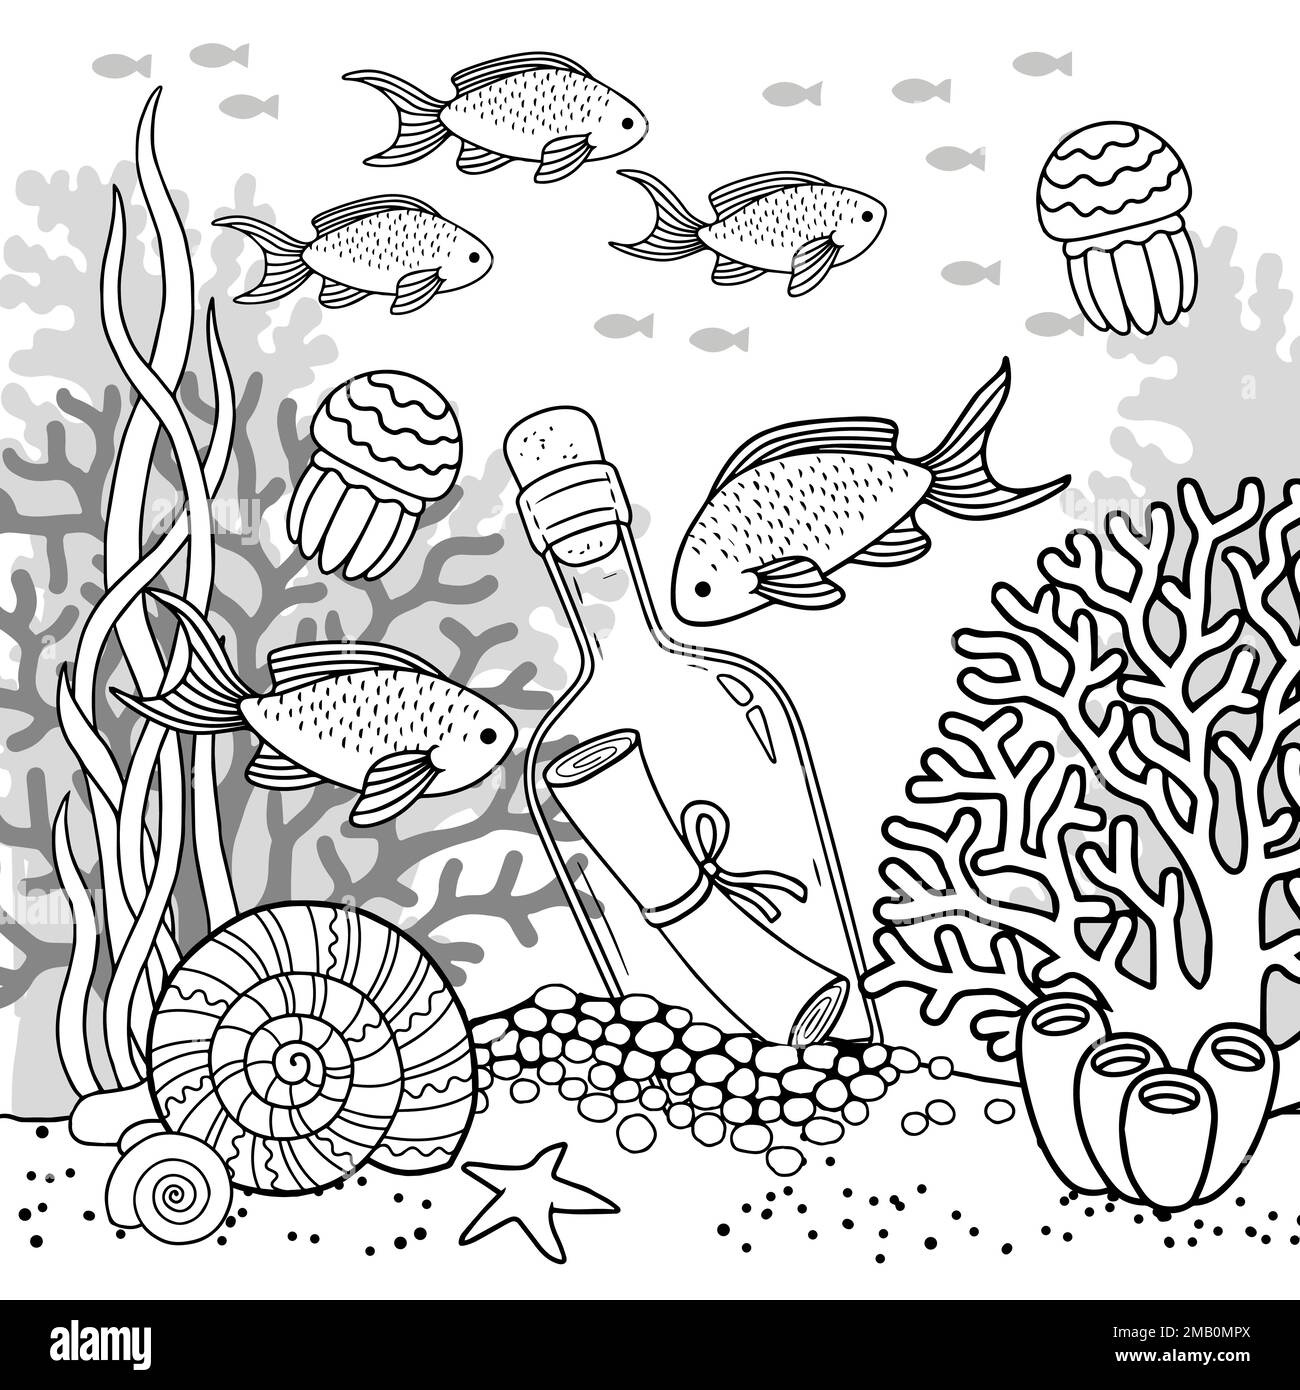 Page de livre de coloriage vectoriel pour adultes. Illustration en noir et blanc de la vie sous-marine, de la créature marine, de la carapace, des algues et des poissons Illustration de Vecteur